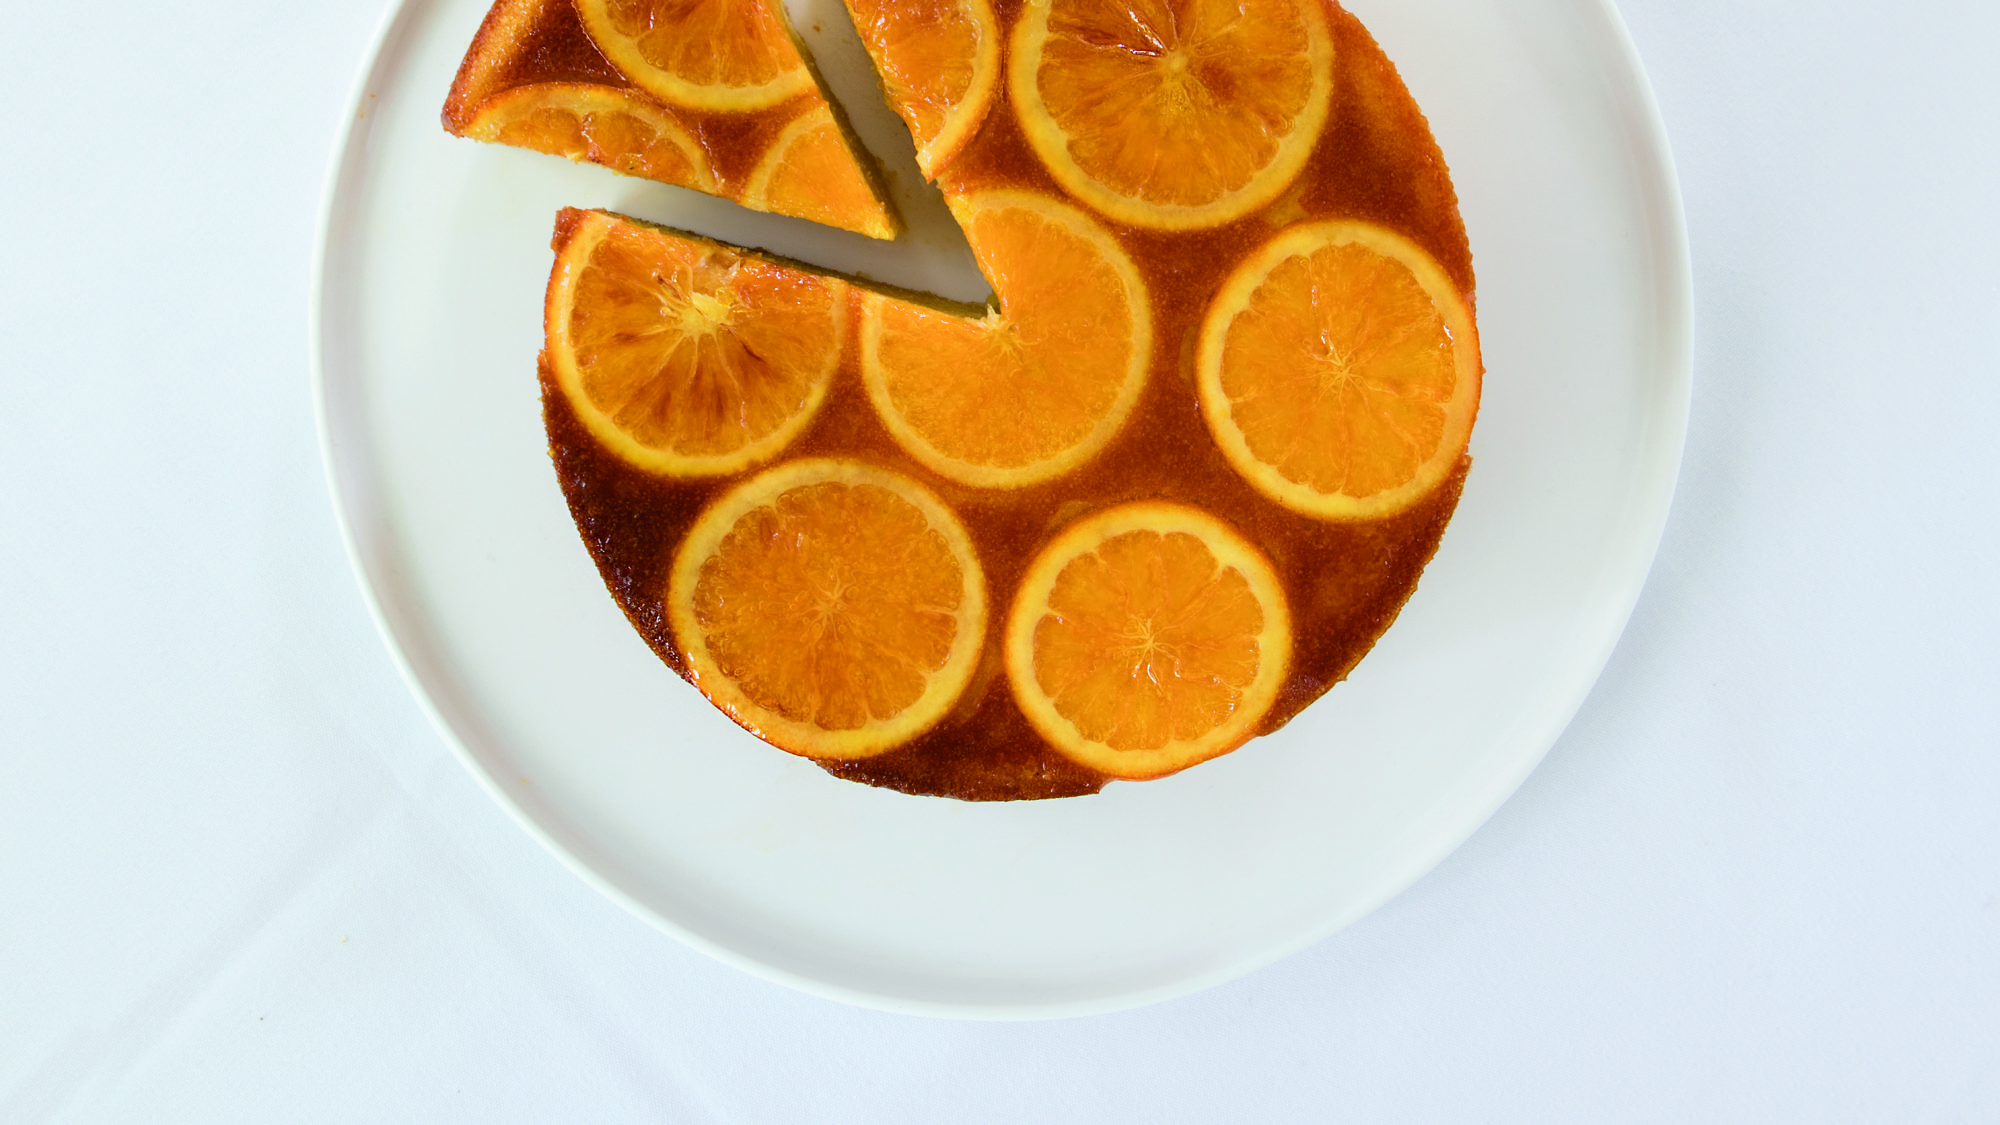 עוגת שקדים ותפוזים של רביבה אפל ז"ל. צילום: רוני כנעני